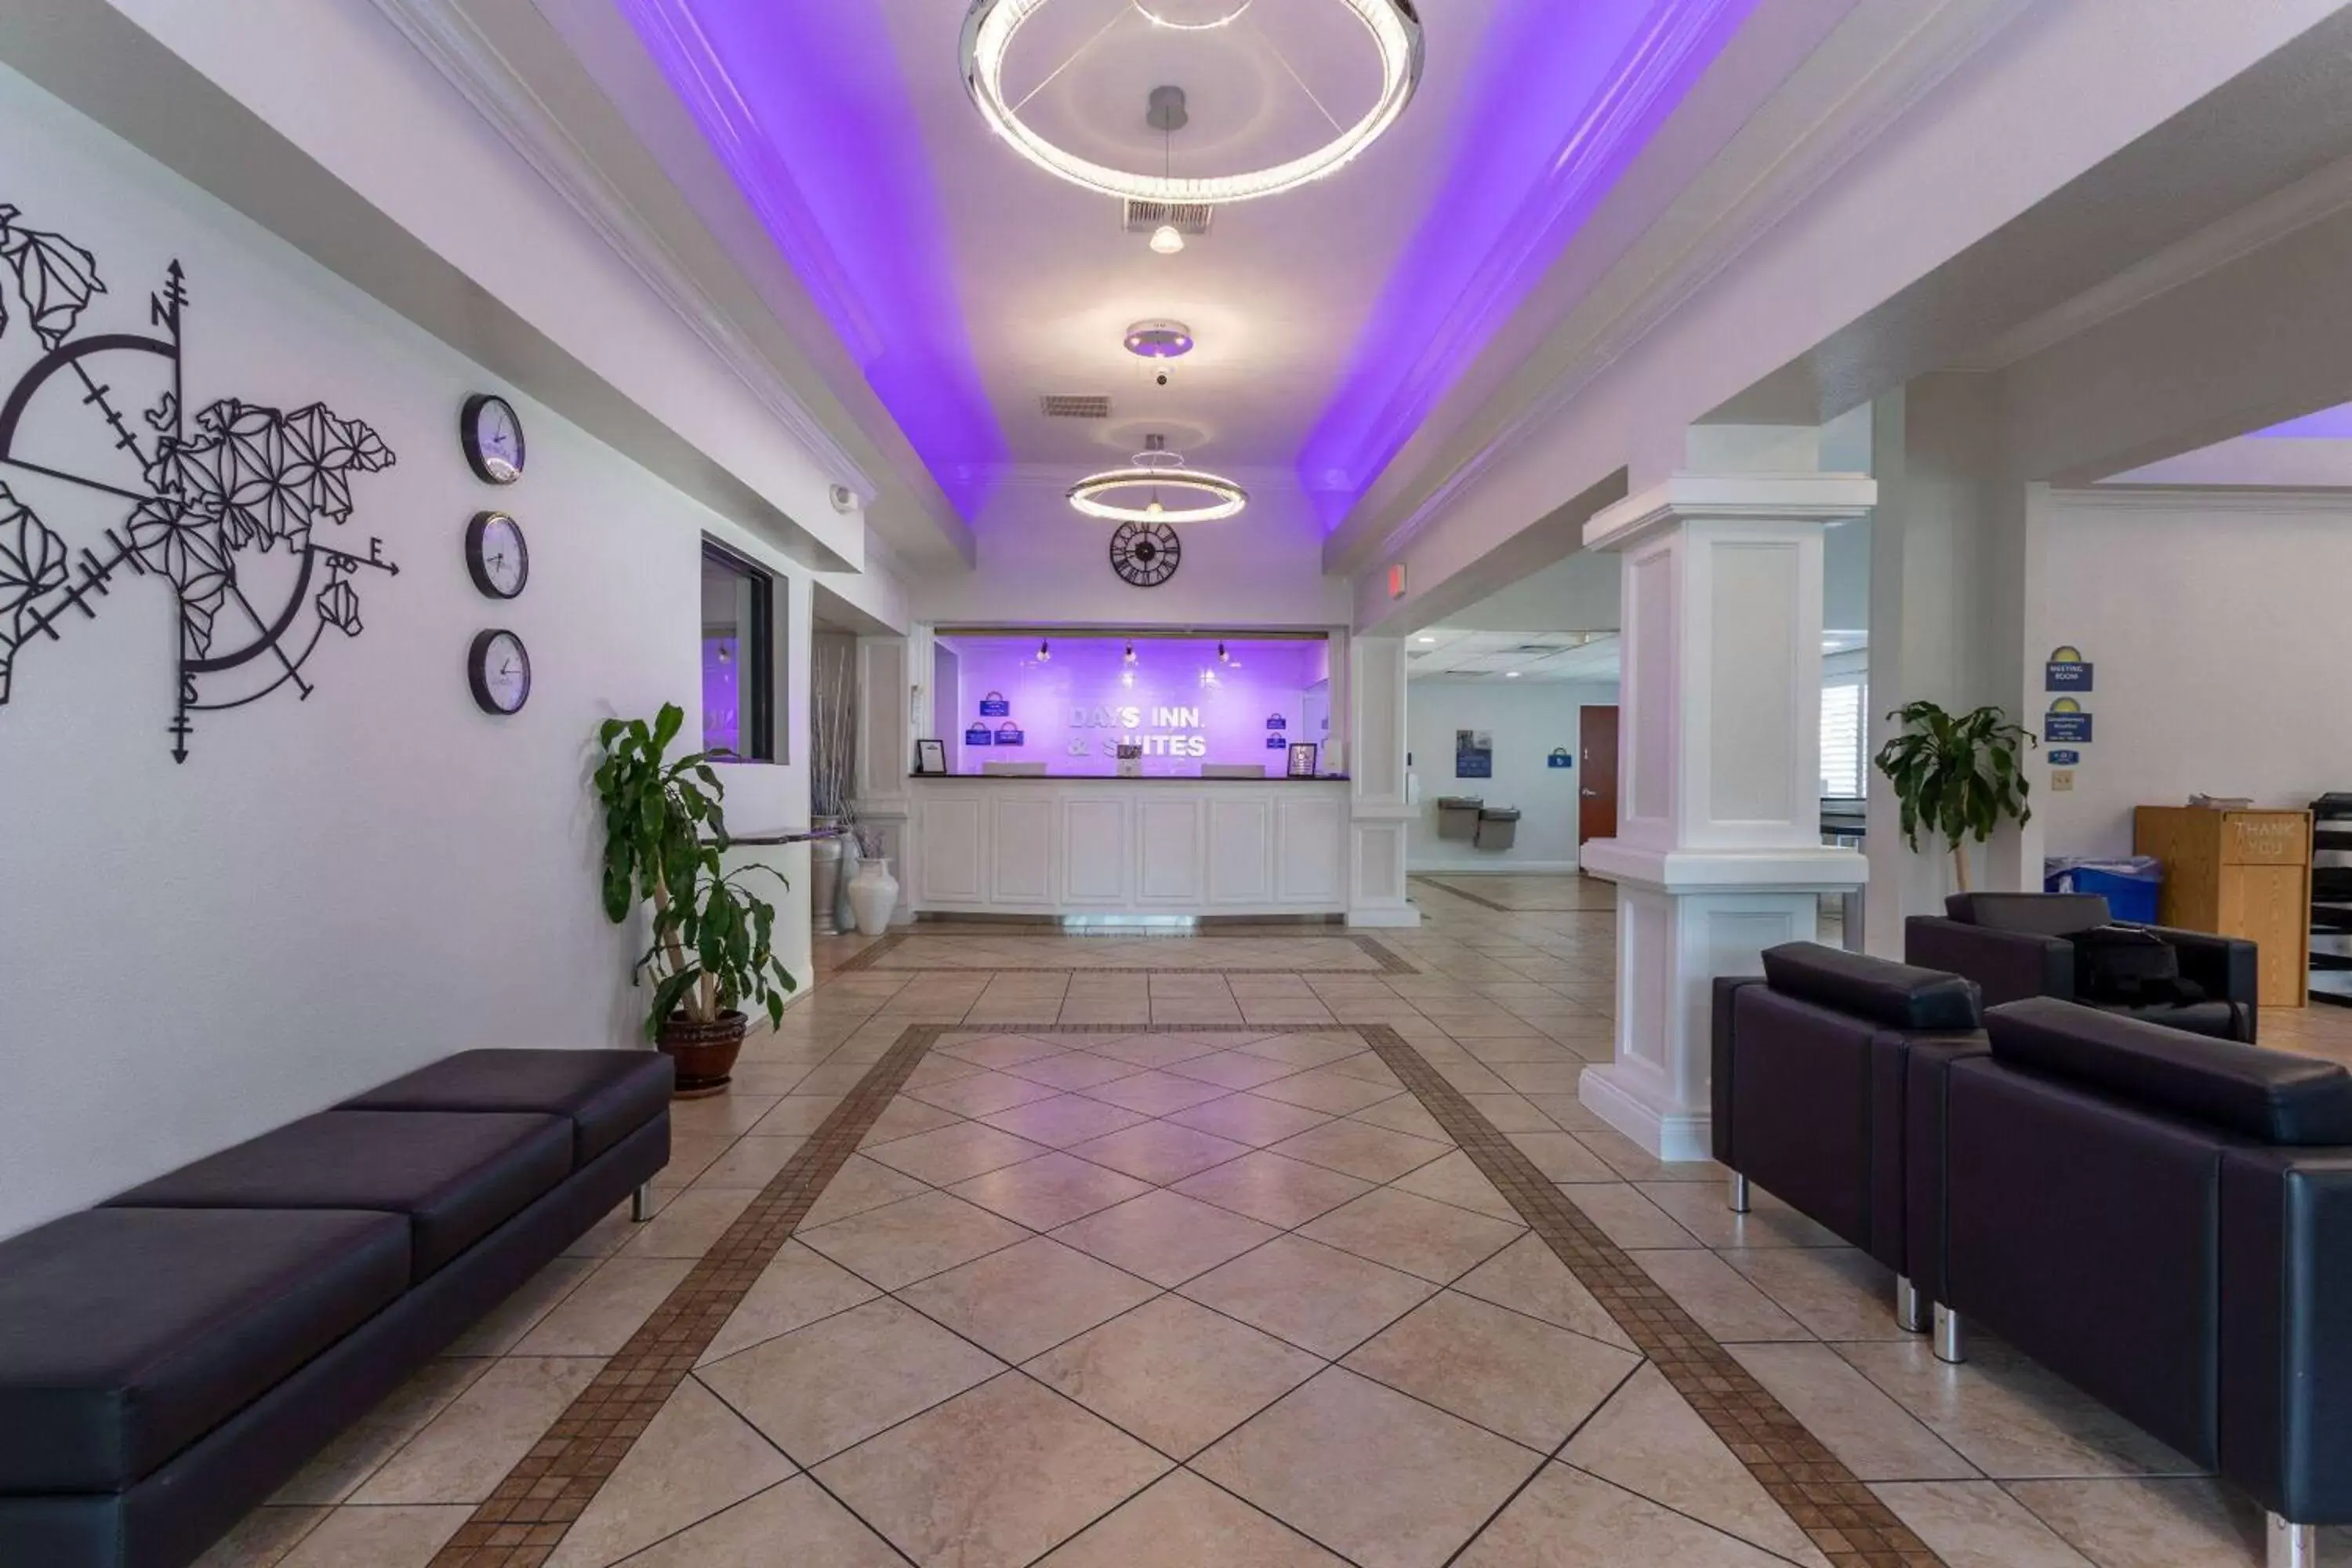 Lobby or reception, Lobby/Reception in Days Inn & Suites by Wyndham Lakeland